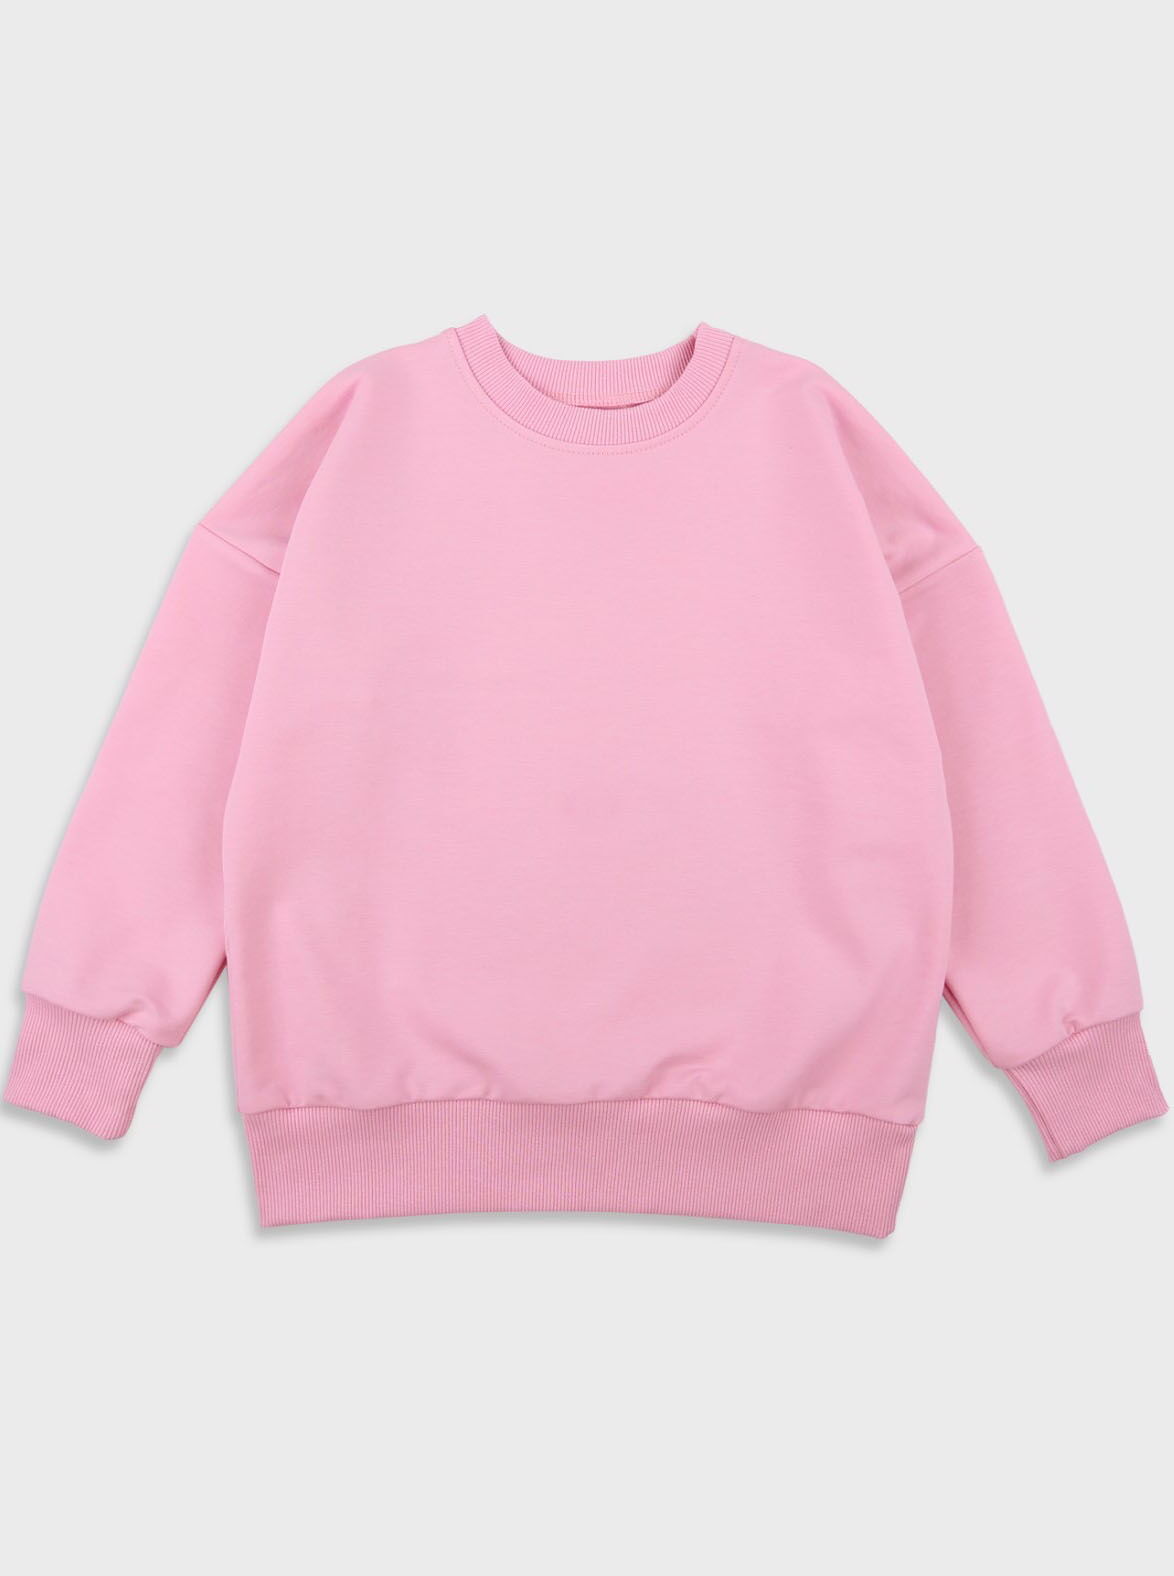 Свитшот для девочки Фламинго розовый 866-325 - цена